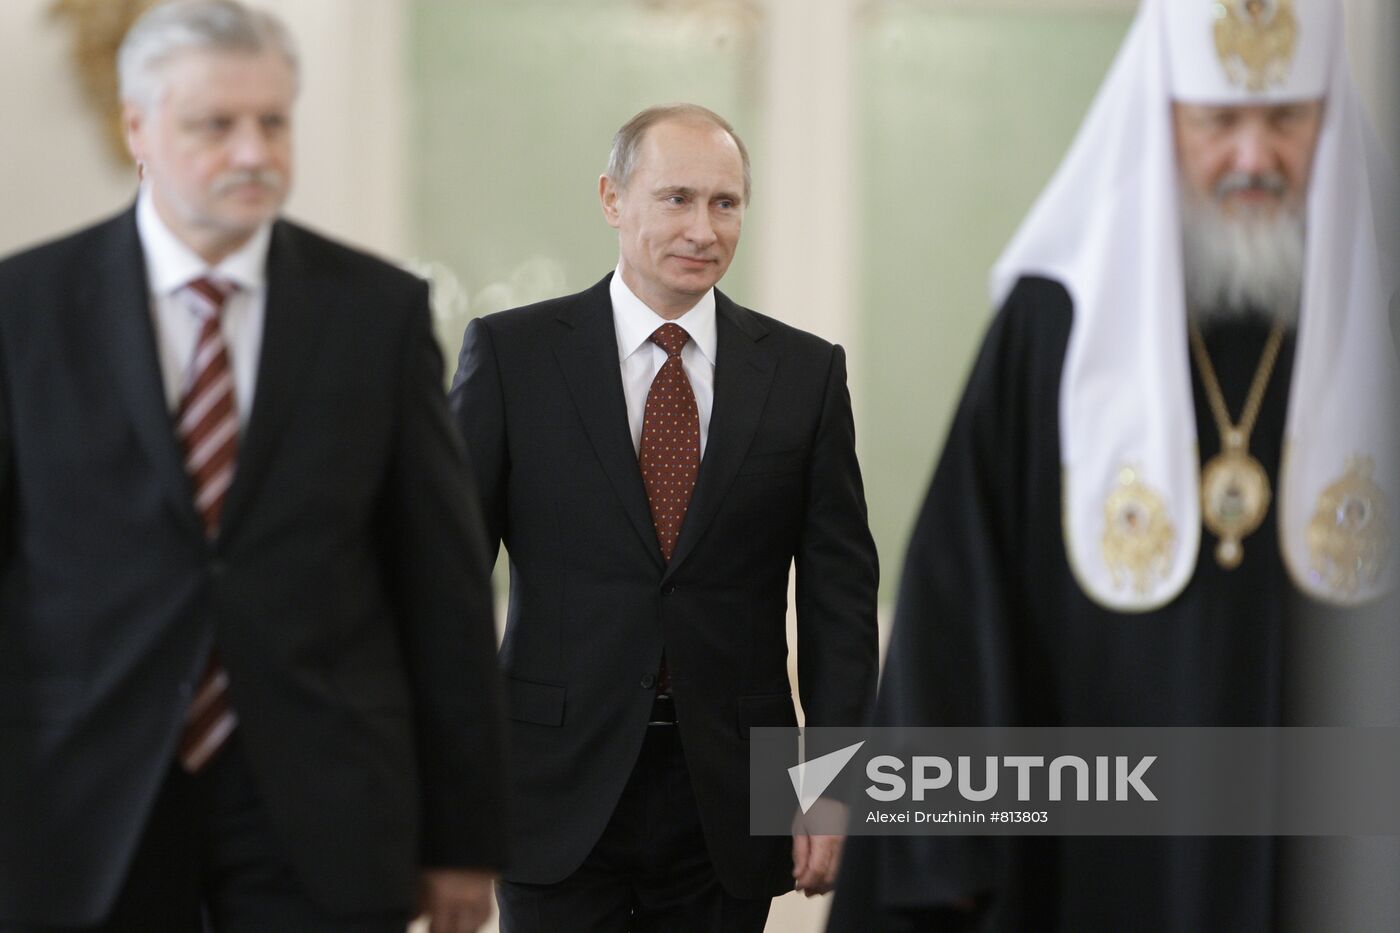 Vladimir Putin, Sergei Mironov and Patriarch Kirill